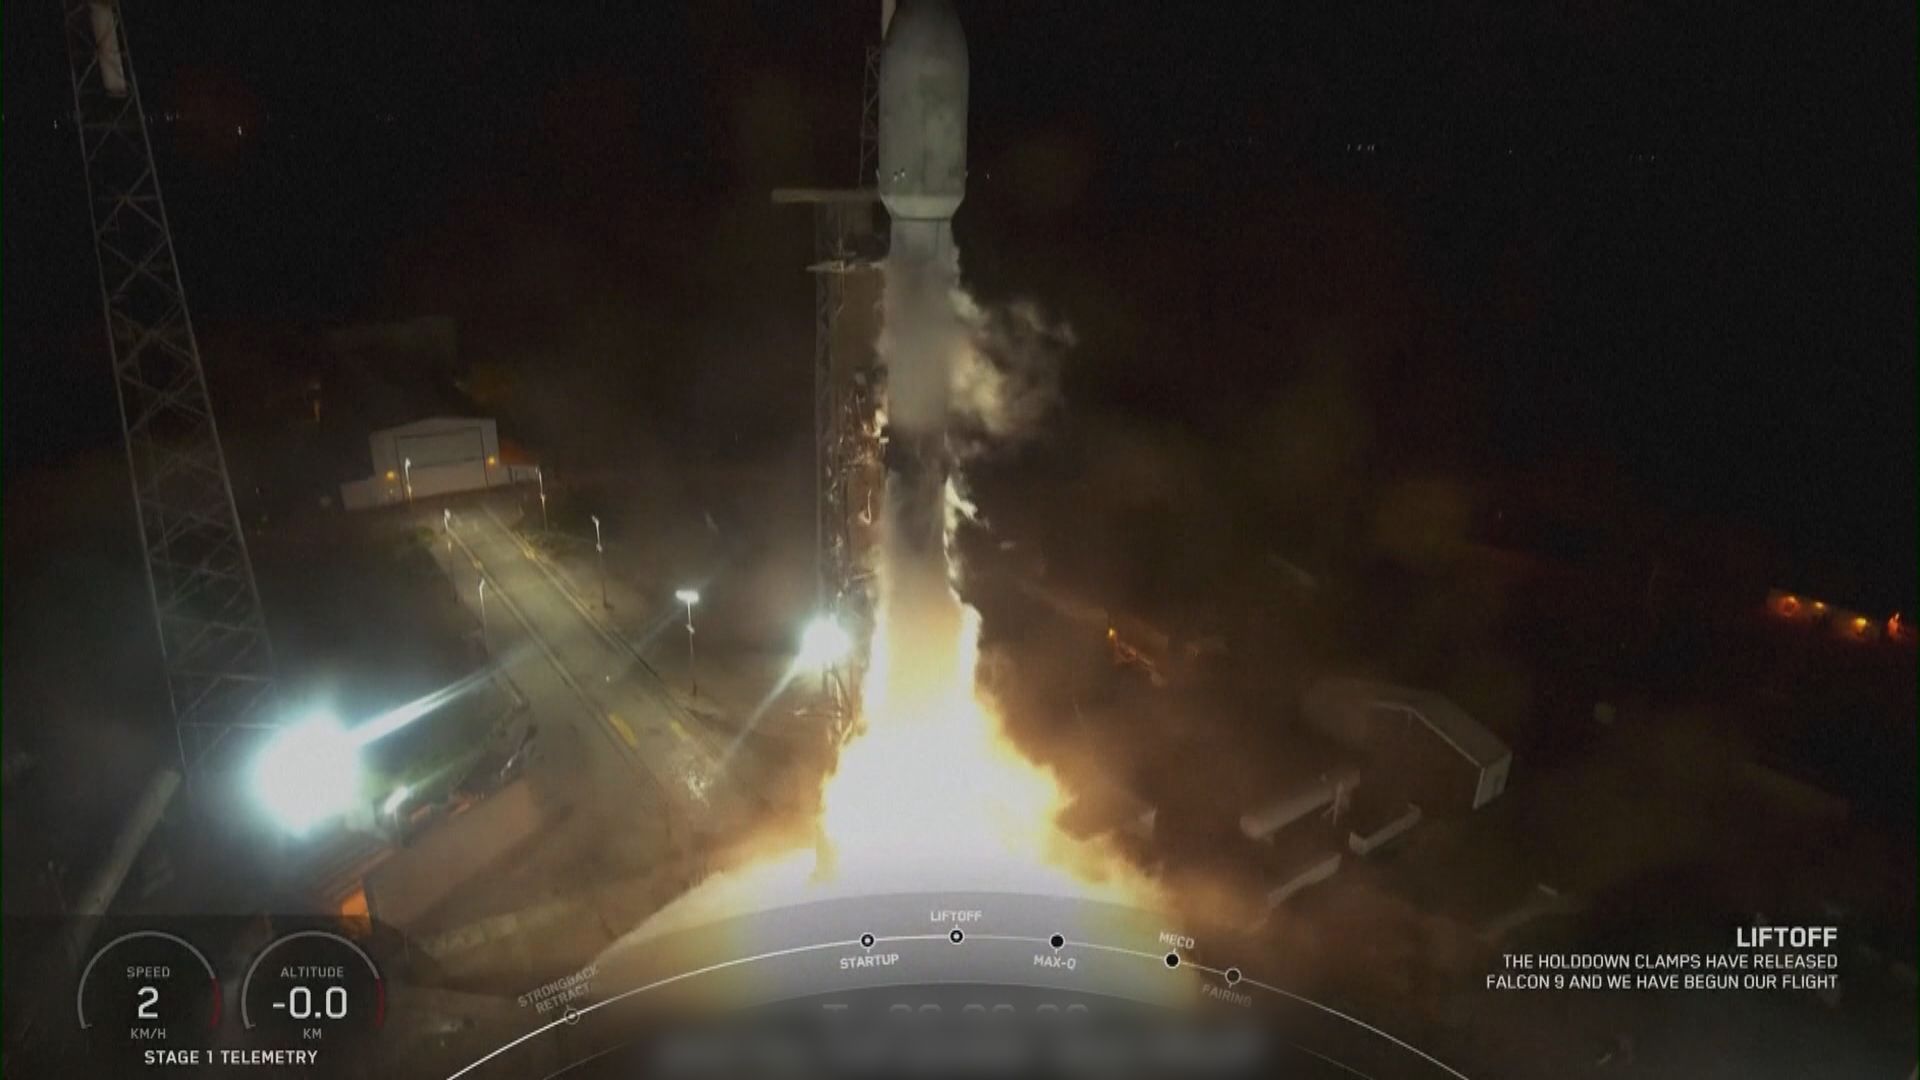 獵鷹9號將22顆星鏈衛星送上太空 兼刷新火箭復用紀錄